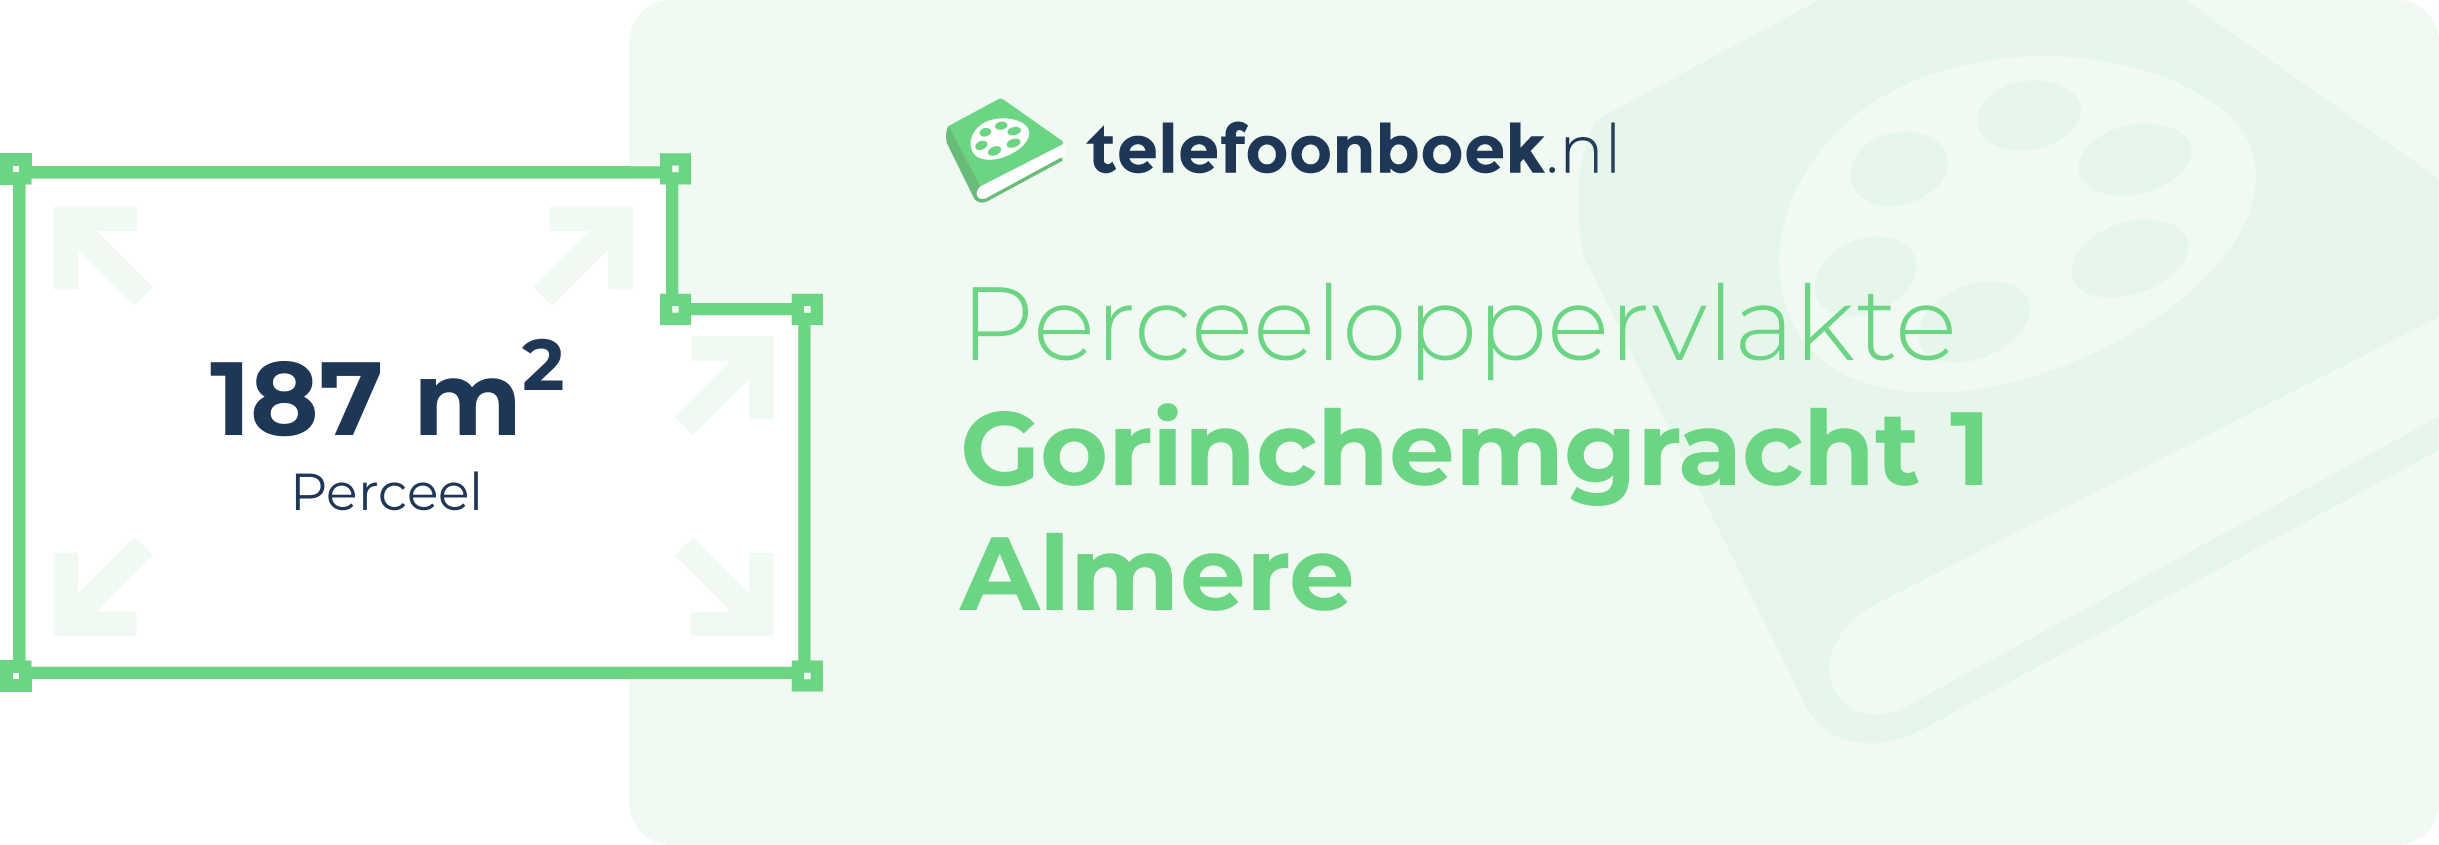 Perceeloppervlakte Gorinchemgracht 1 Almere